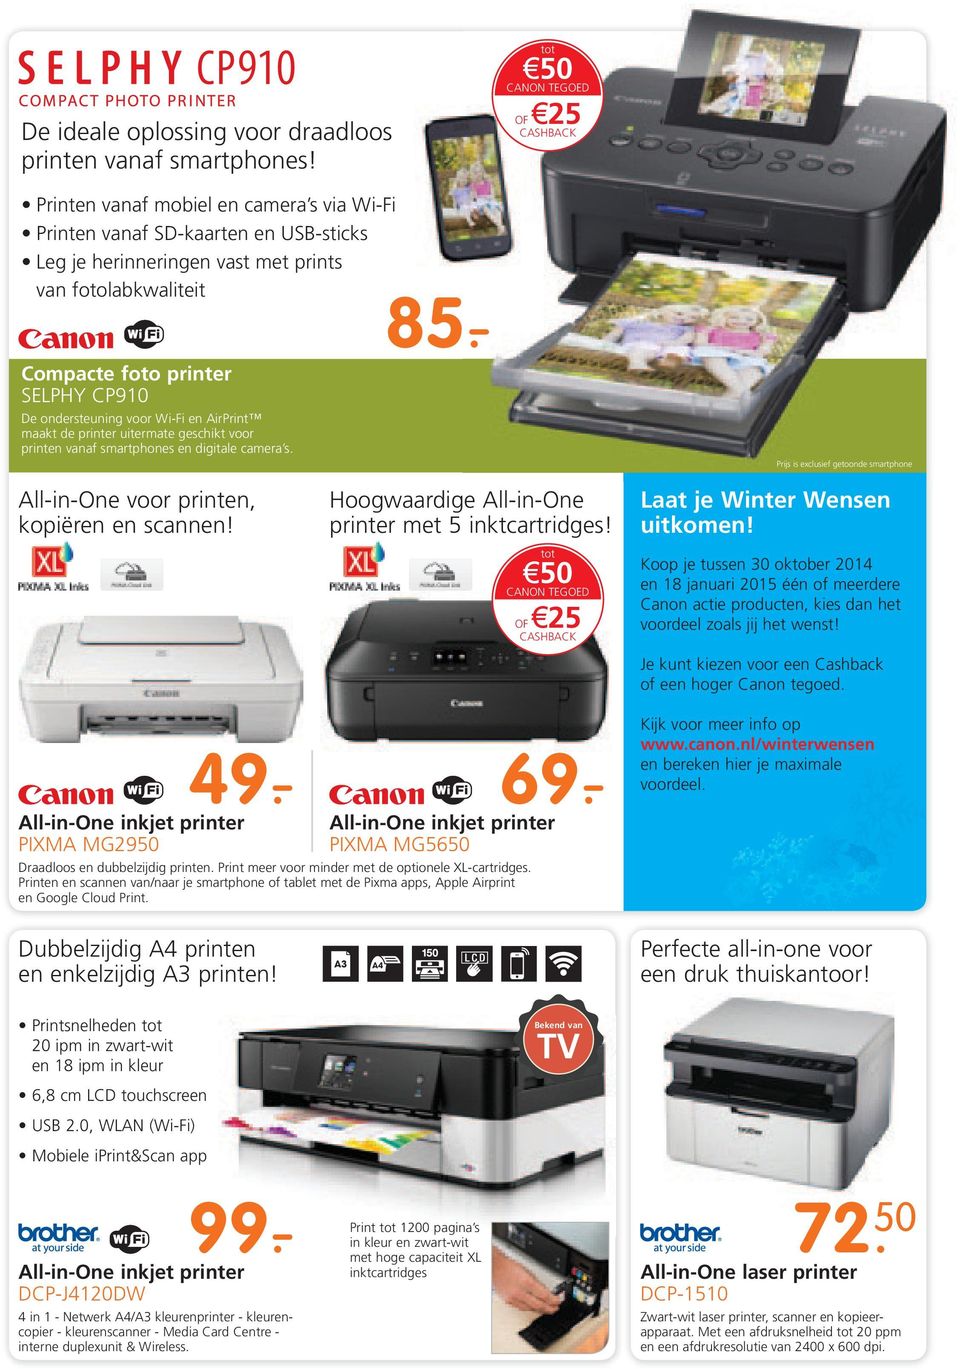 - All-in-One voor printen, kopiëren en scannen! printer met 5 inktcartridges! tot 50 CANON TEGOED OF 25 Laat je Winter Wensen uitkomen!